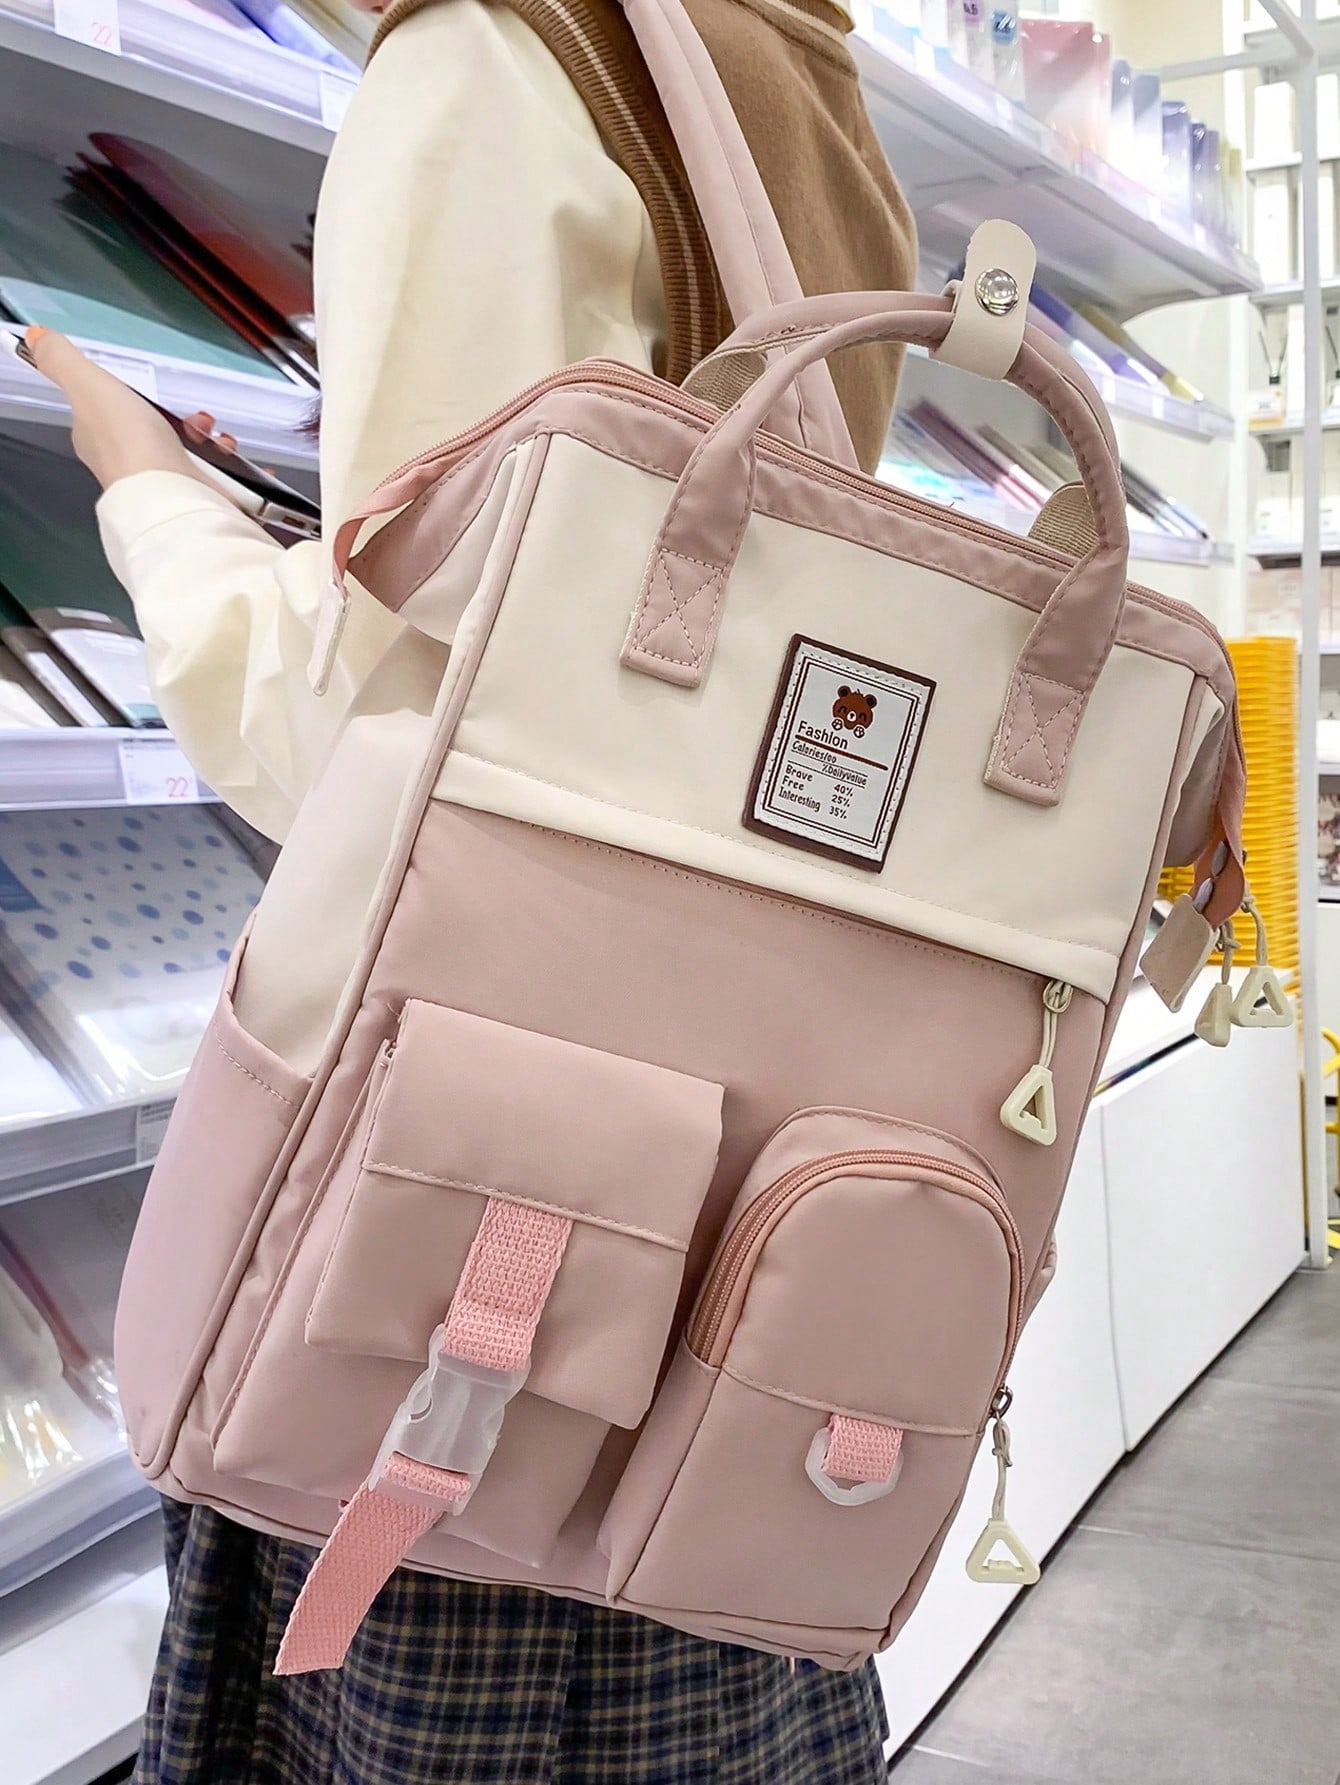 мясник и ножи мясницкий незаменимый безопасный уютный плед рюкзак 17 дюймов винтажный графический винтажный рюкзак для пикников Женский винтажный однотонный функциональный рюкзак, розовый